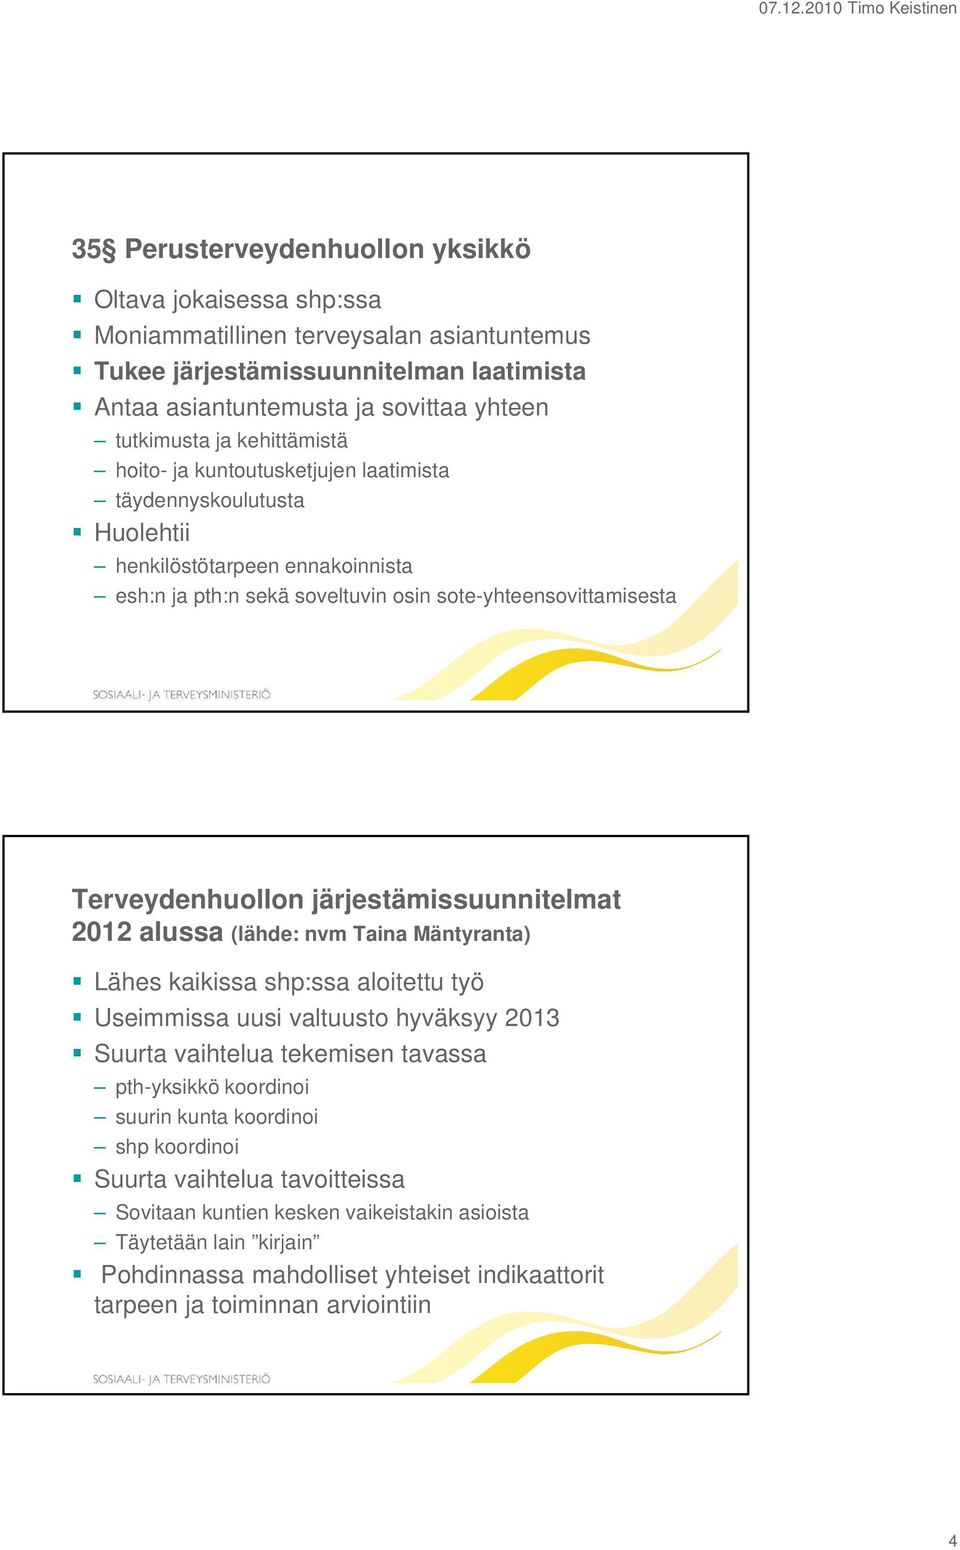 järjestämissuunnitelmat 2012 alussa (lähde: nvm Taina Mäntyranta) Lähes kaikissa shp:ssa aloitettu työ Useimmissa uusi valtuusto hyväksyy 2013 Suurta vaihtelua tekemisen tavassa pth-yksikkö koordinoi